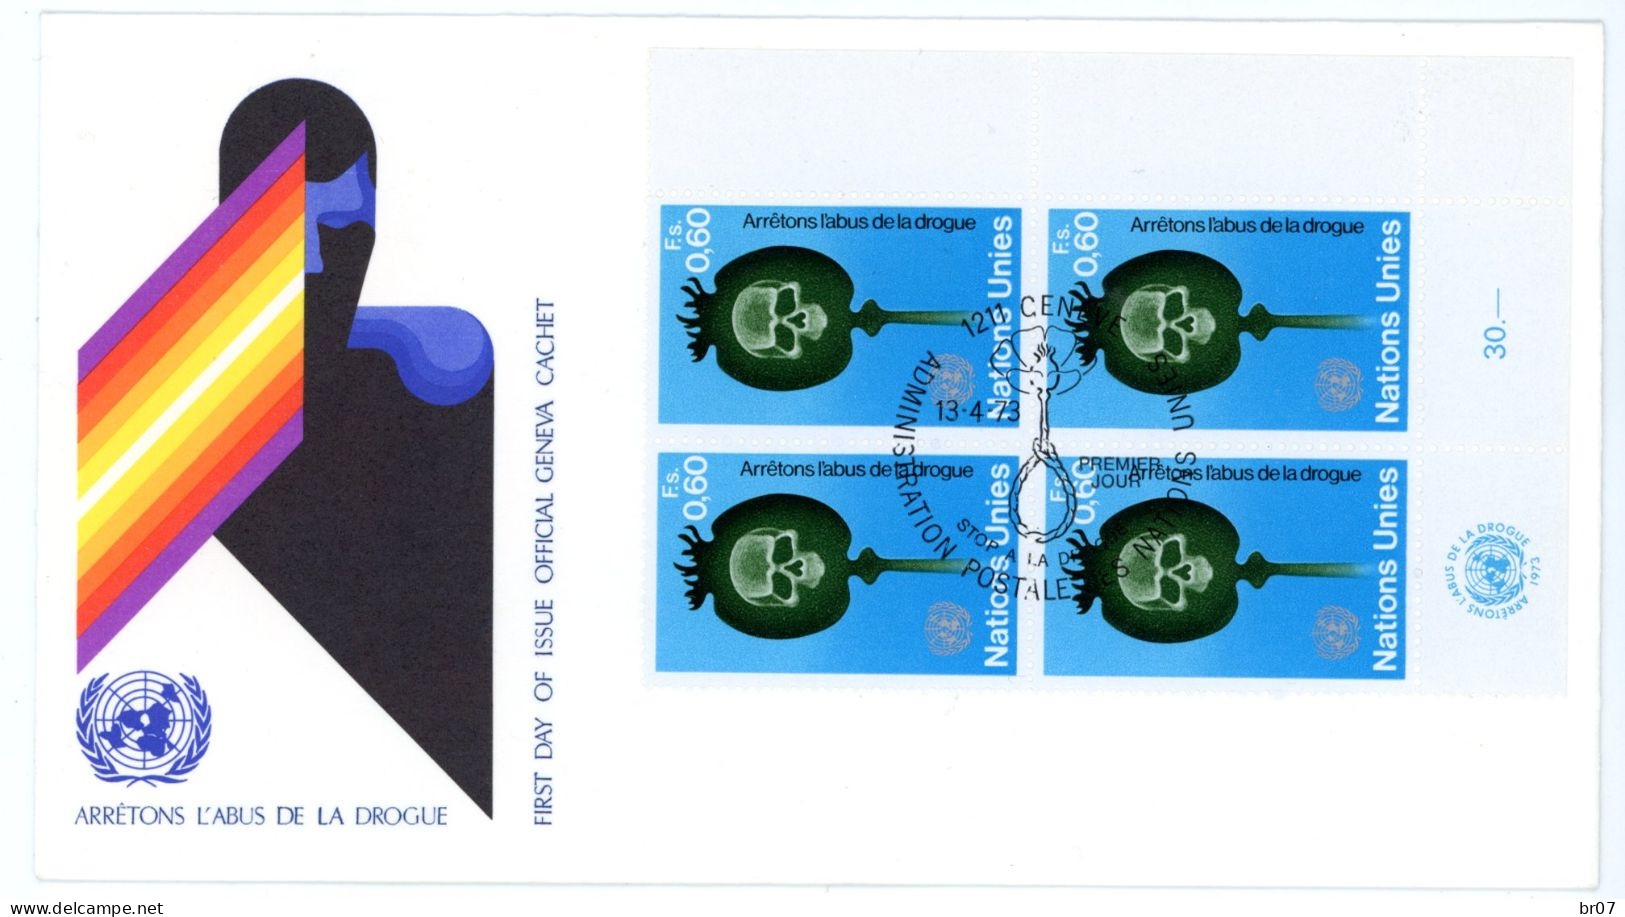 NATIONS UNIES GENEVE +30 X LETTRE PREMIER JOUR & ENTIER 1966 1972 SCANS INDIVIDUELS POIDS 135g AVANT EMBALLAGE - Cartas & Documentos